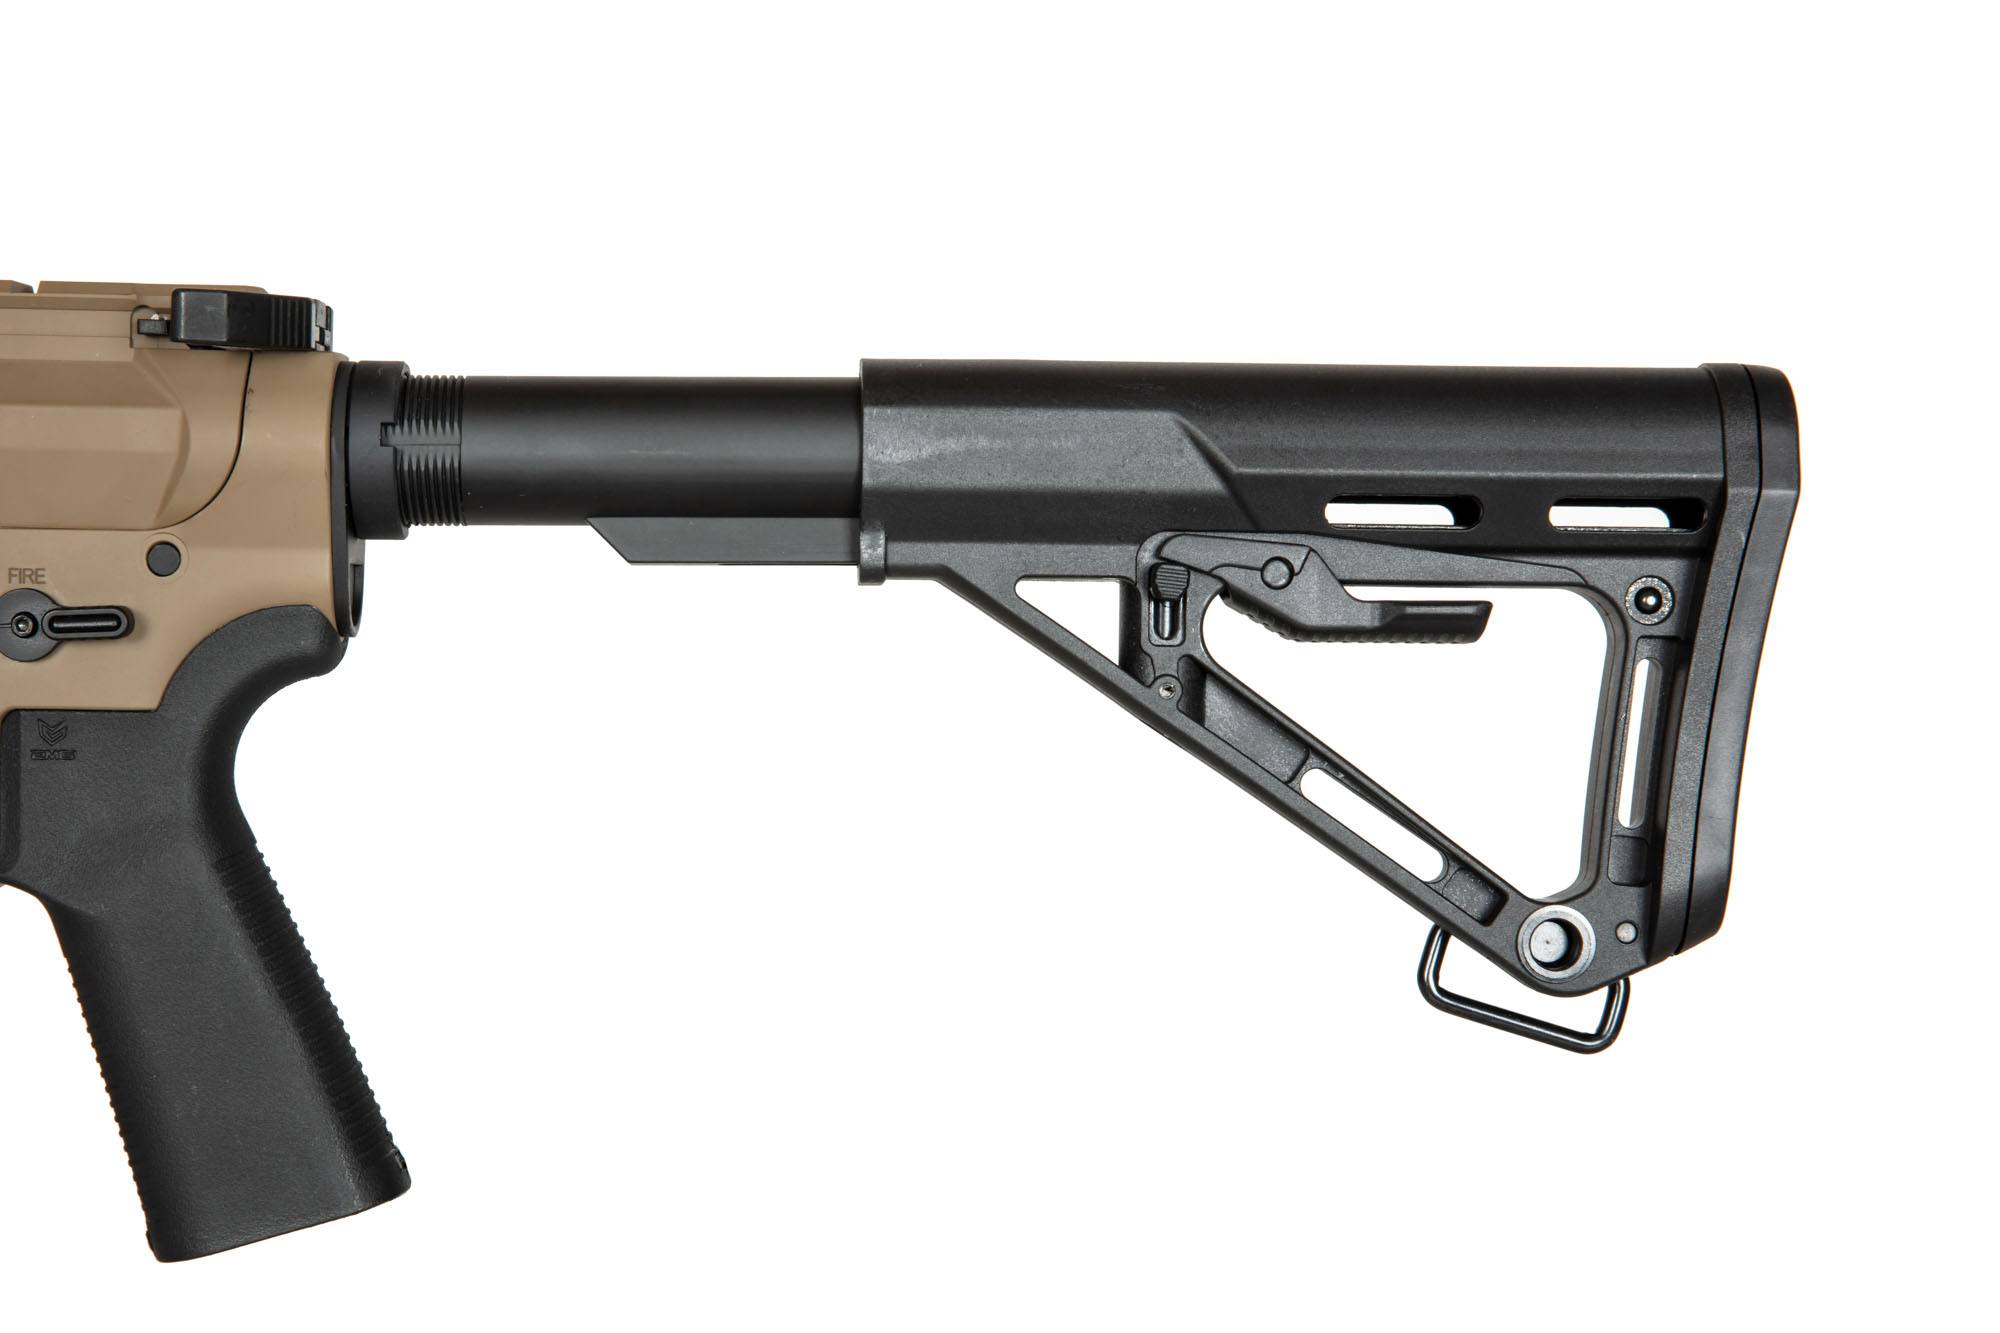 Noveske SBR 7.94 Gen 4 Carbine - Tan